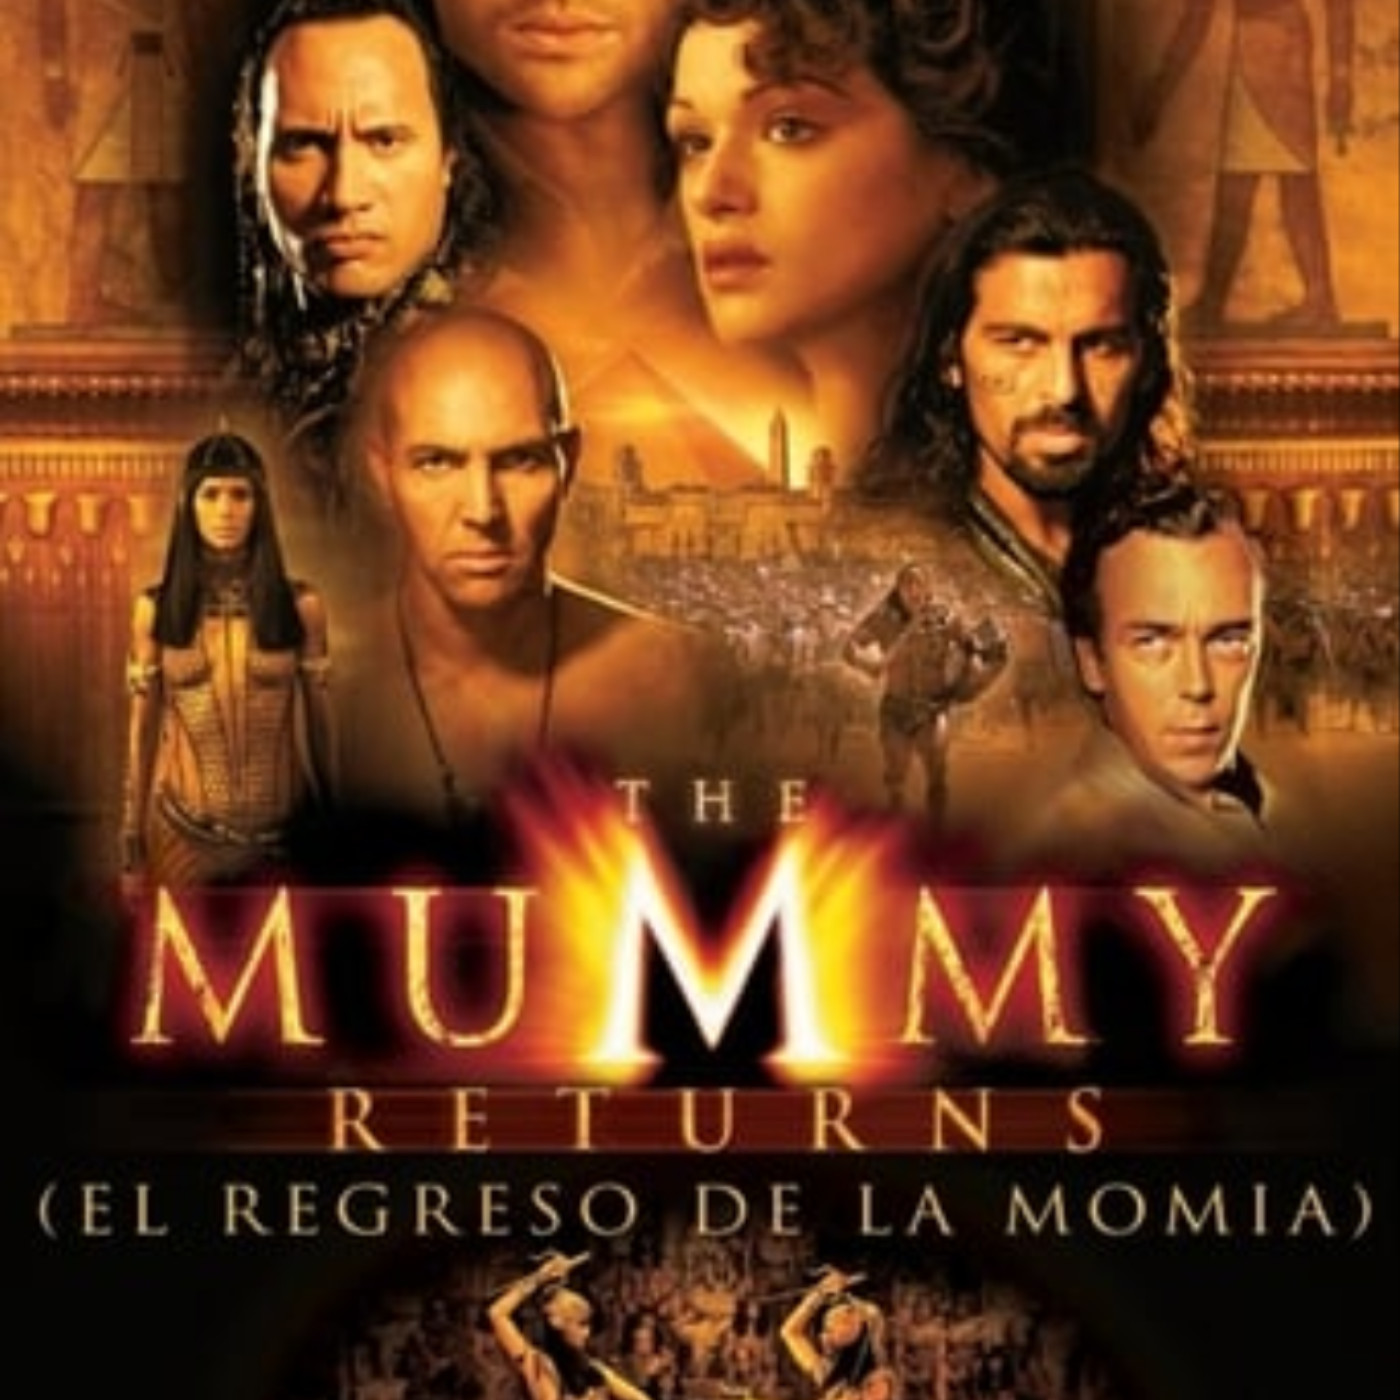 Ver El regreso de la momia 2001 online gratis en español y latino | Podcast  on SoundOn